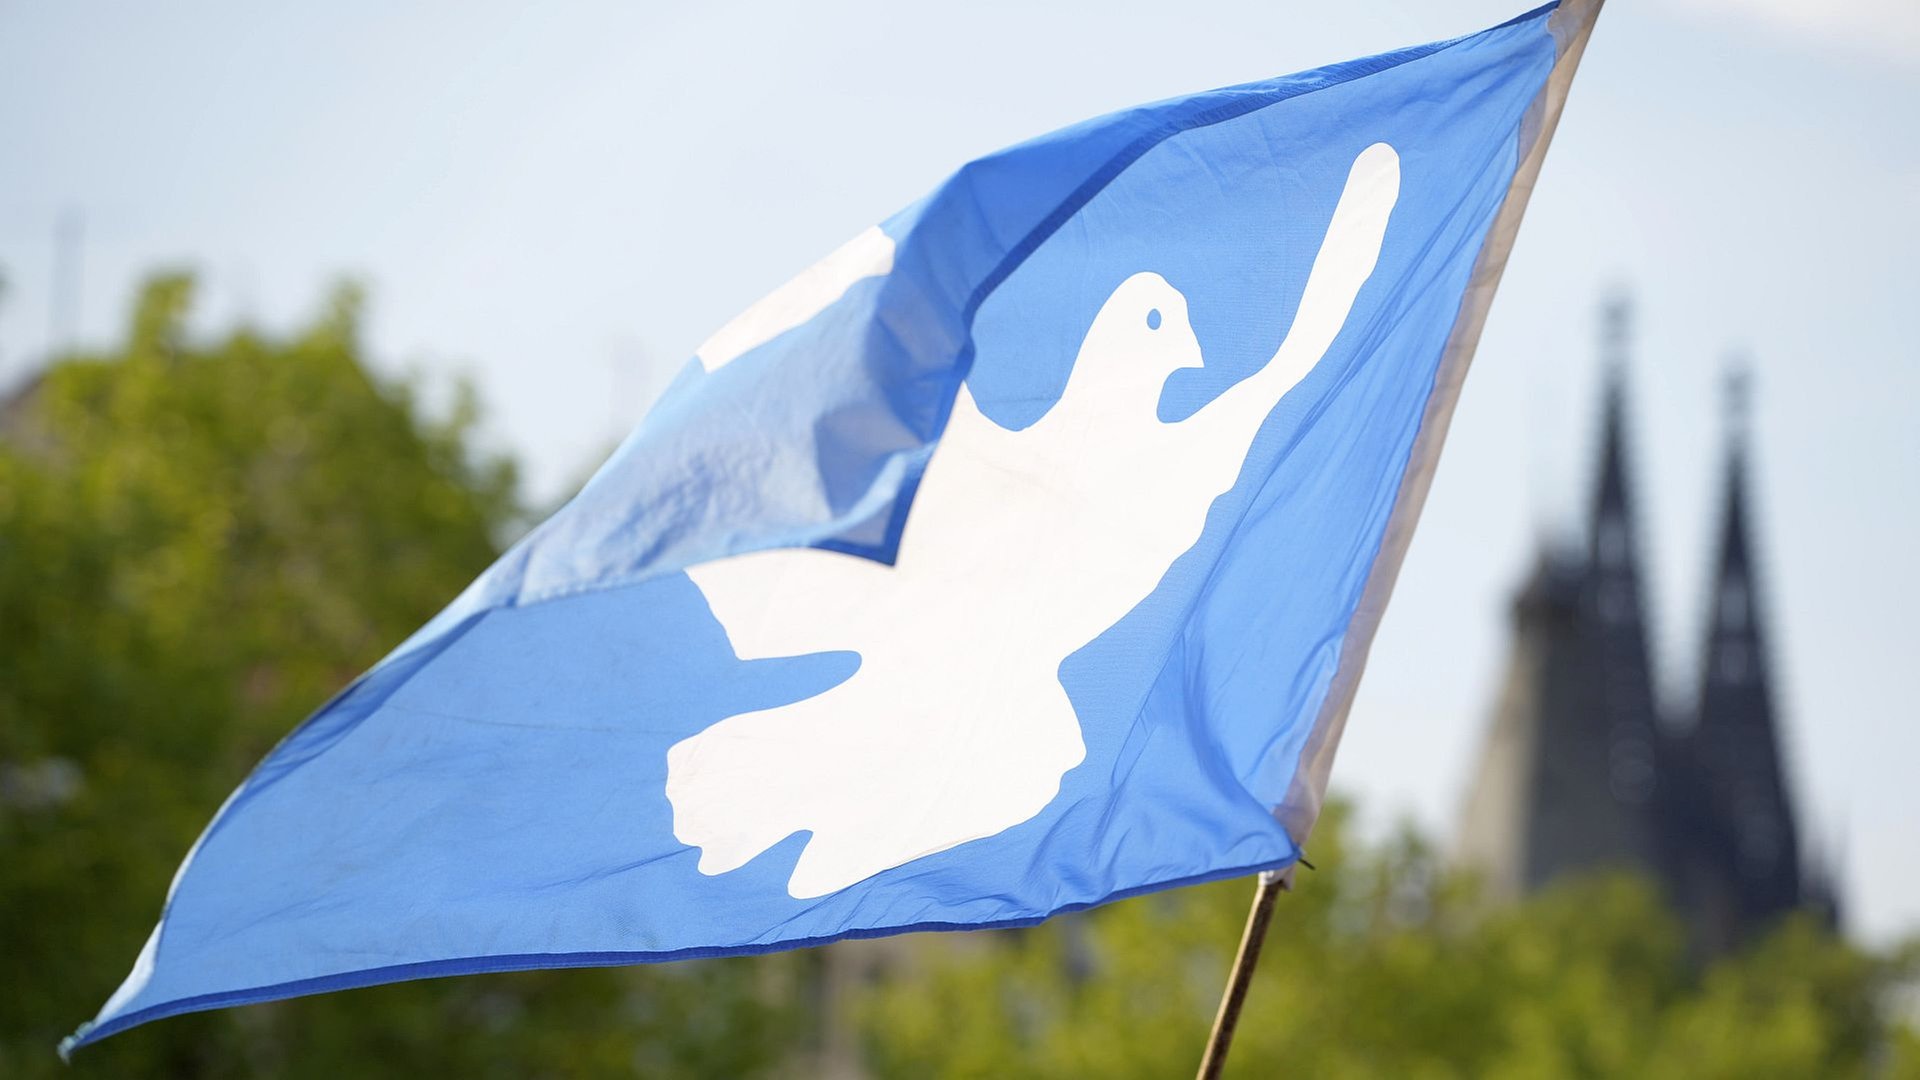 Symbole des Friedens: Eine Übersicht - Evangelische Zeitung